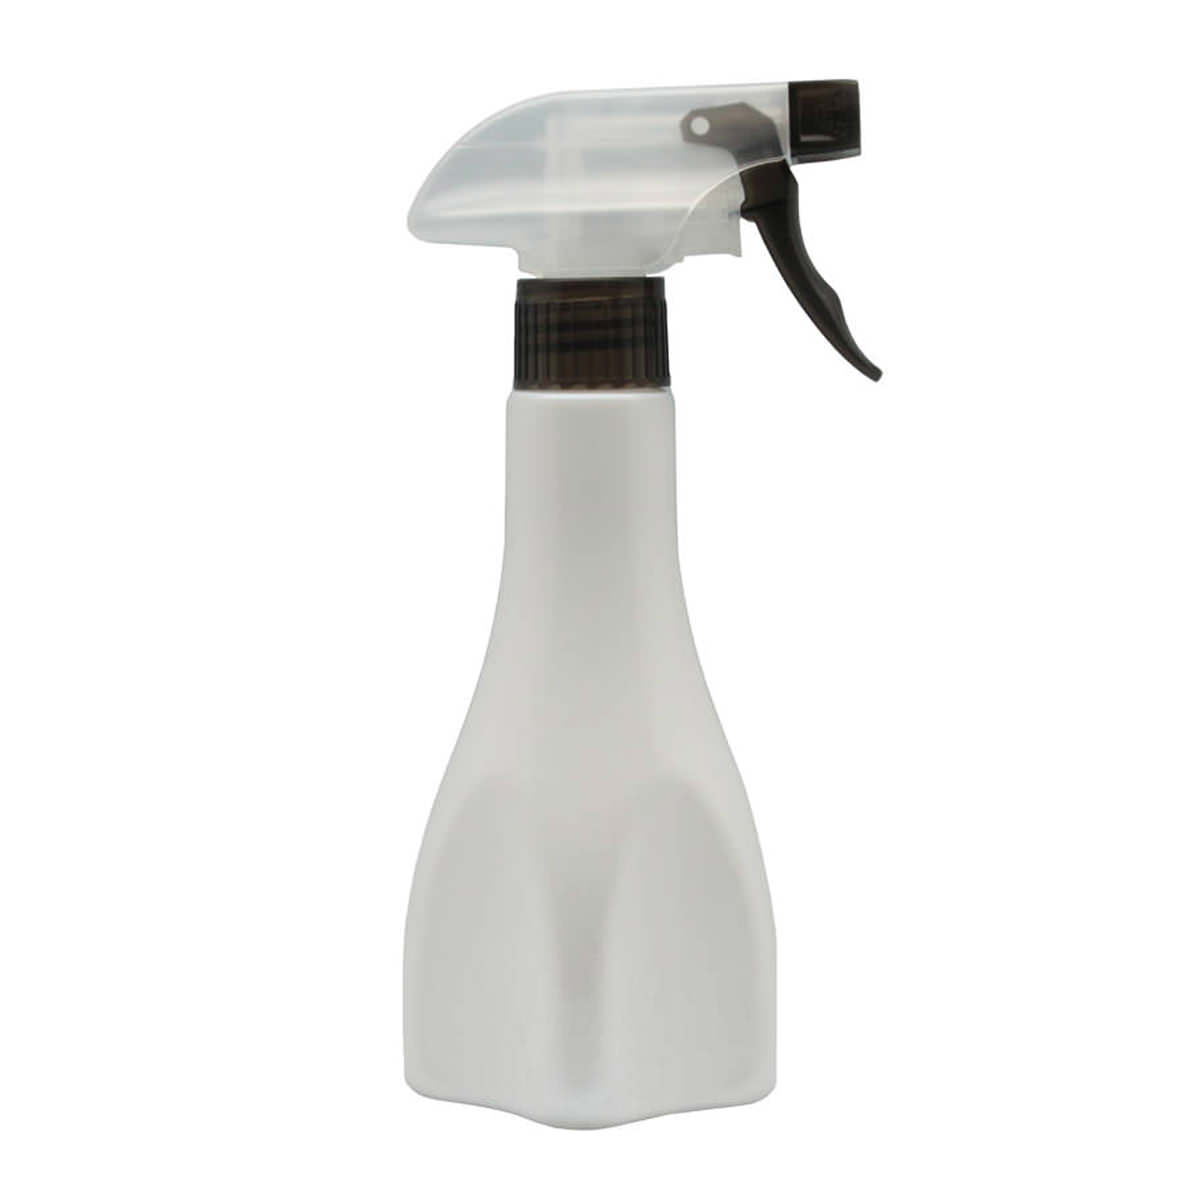 Botol-Spray-V060-sfw(1)